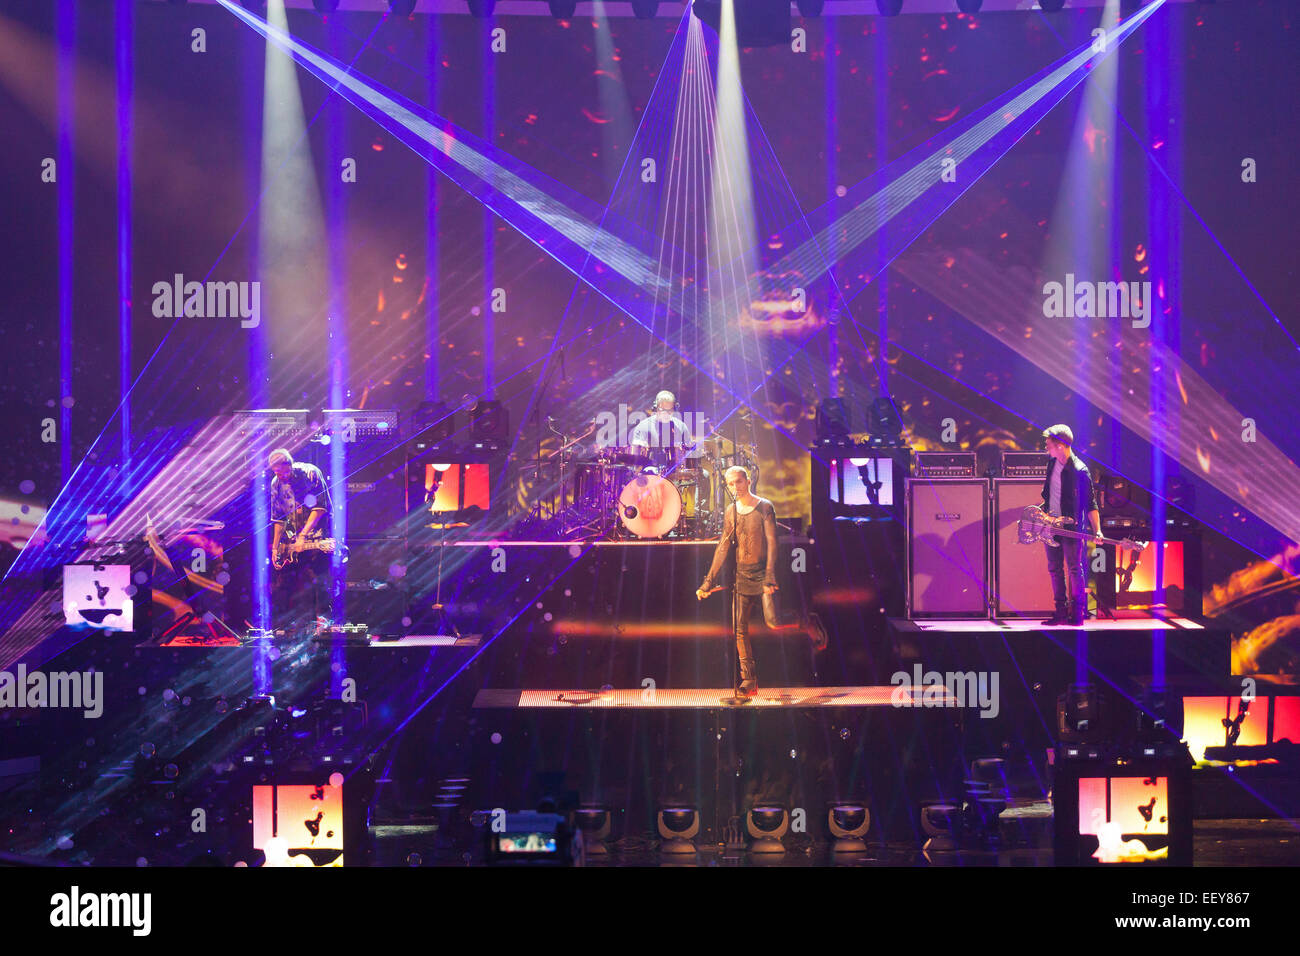 Le groupe de rock allemand Tokio Hotel au cours de l'émission de télévision allemande ZDF Wetten Dass à Erfurt, Thuringe, Allemagne, Europe Banque D'Images